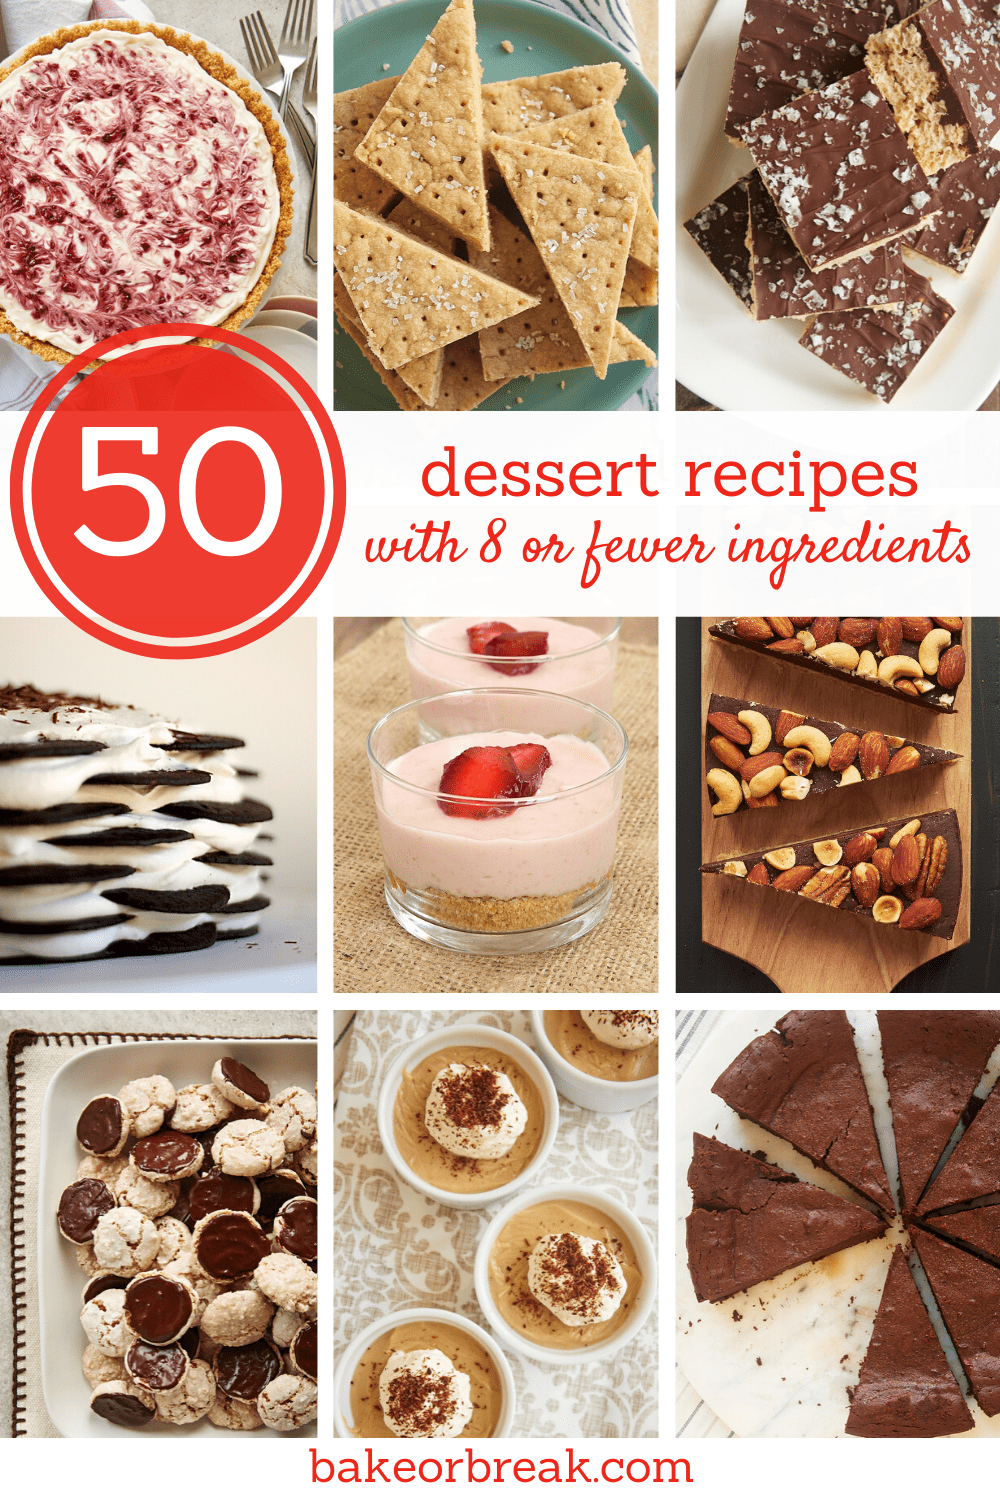 50 de rețete de deserturi cu 8 sau mai puține ingrediente bakeorbreak.com